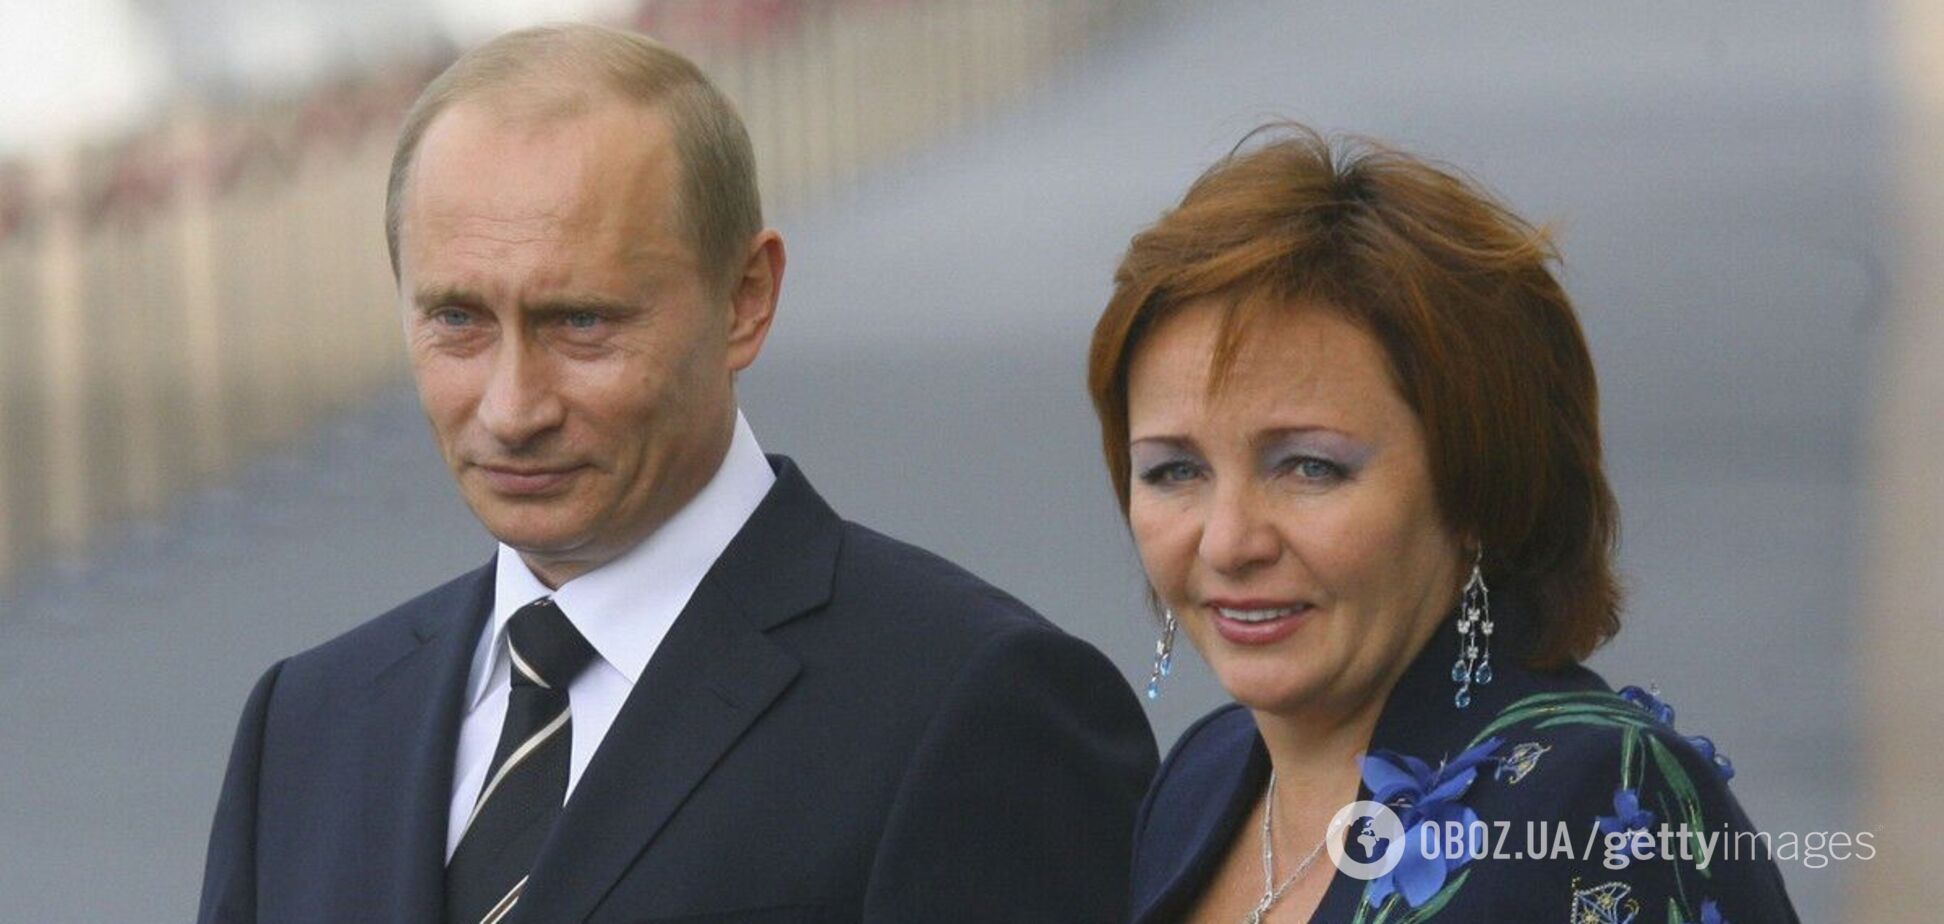 Як Путін 'відфотошопив' дружину Людмилу з історії після розлучення у 2013 році. Випливли подробиці